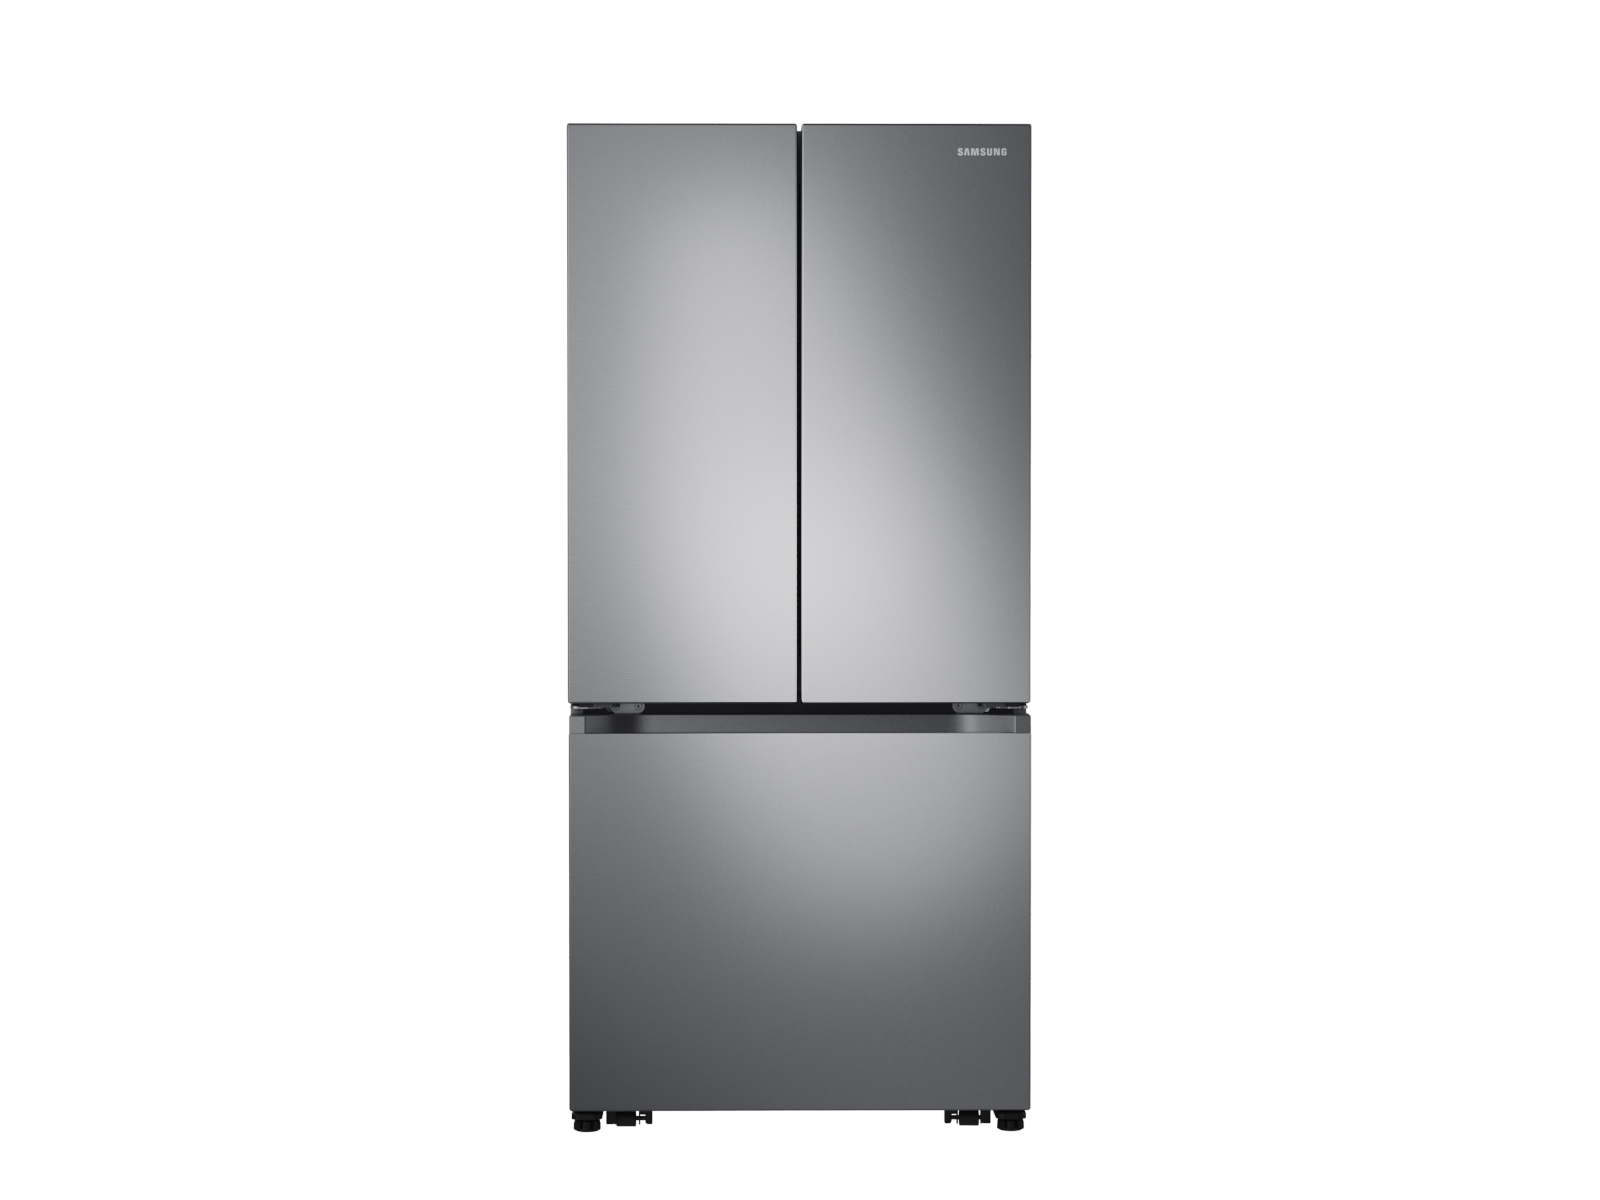 Samsung Fridge Doors uneven : r/refrigerator